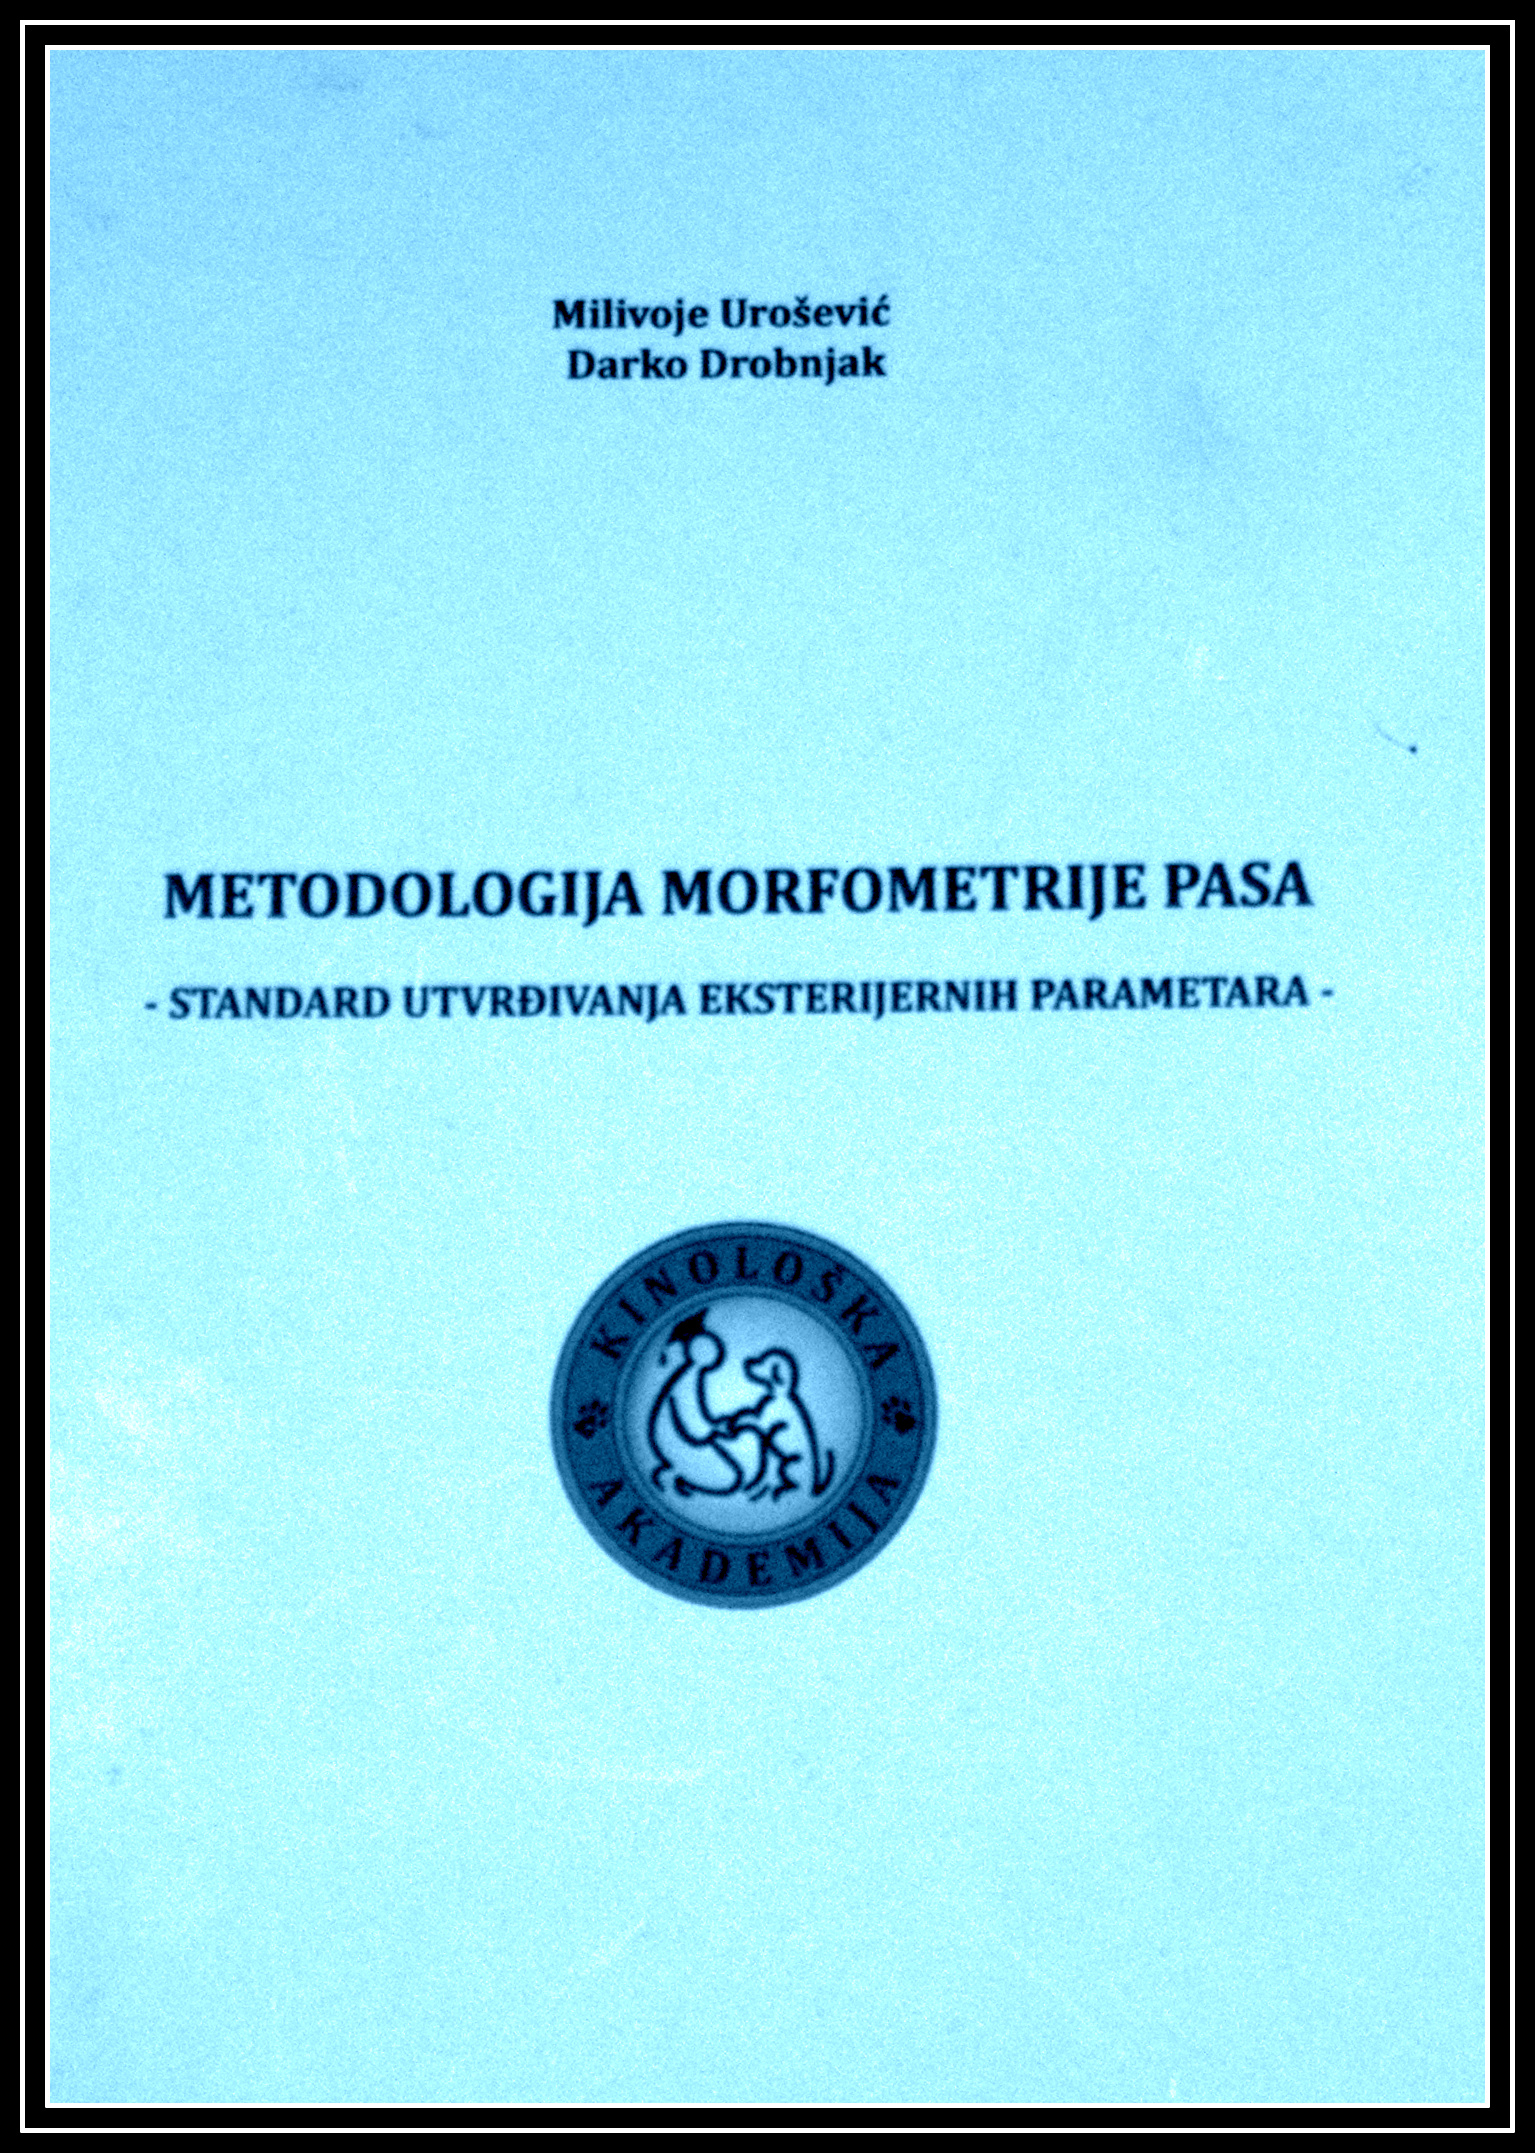 Metodologija  morfometrije pasa – odlomak  iz knjige dr M.Uroševića i dr D.Drobnjaka